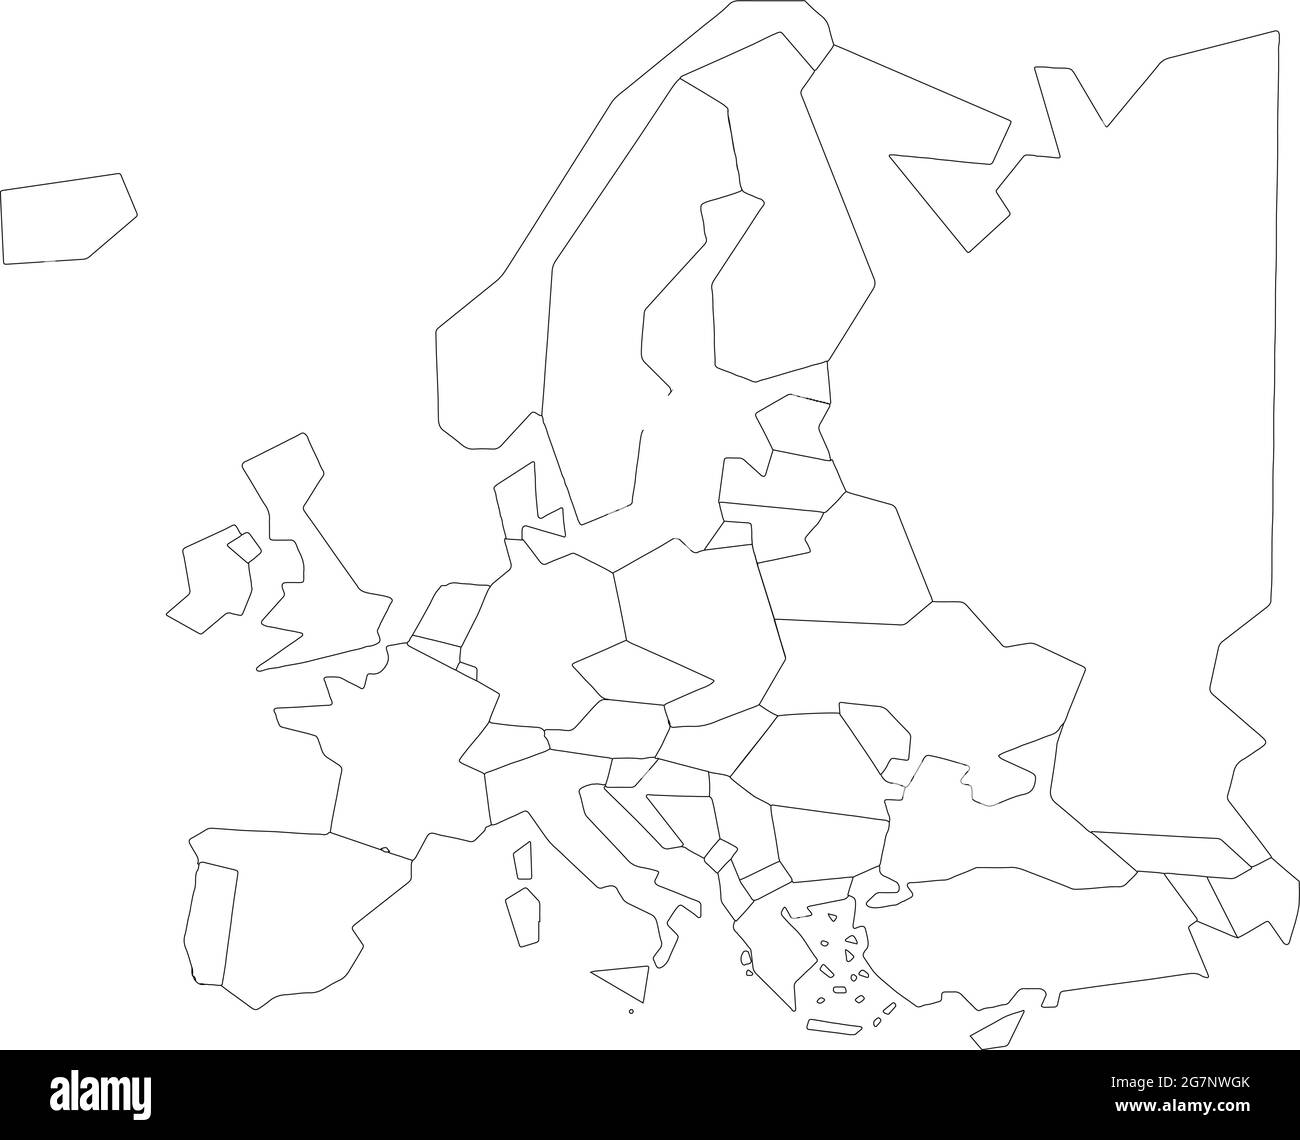 Vektorkarte von Europa, farblos mit Umriss, schwarz und weiß zu studieren Stock Vektor